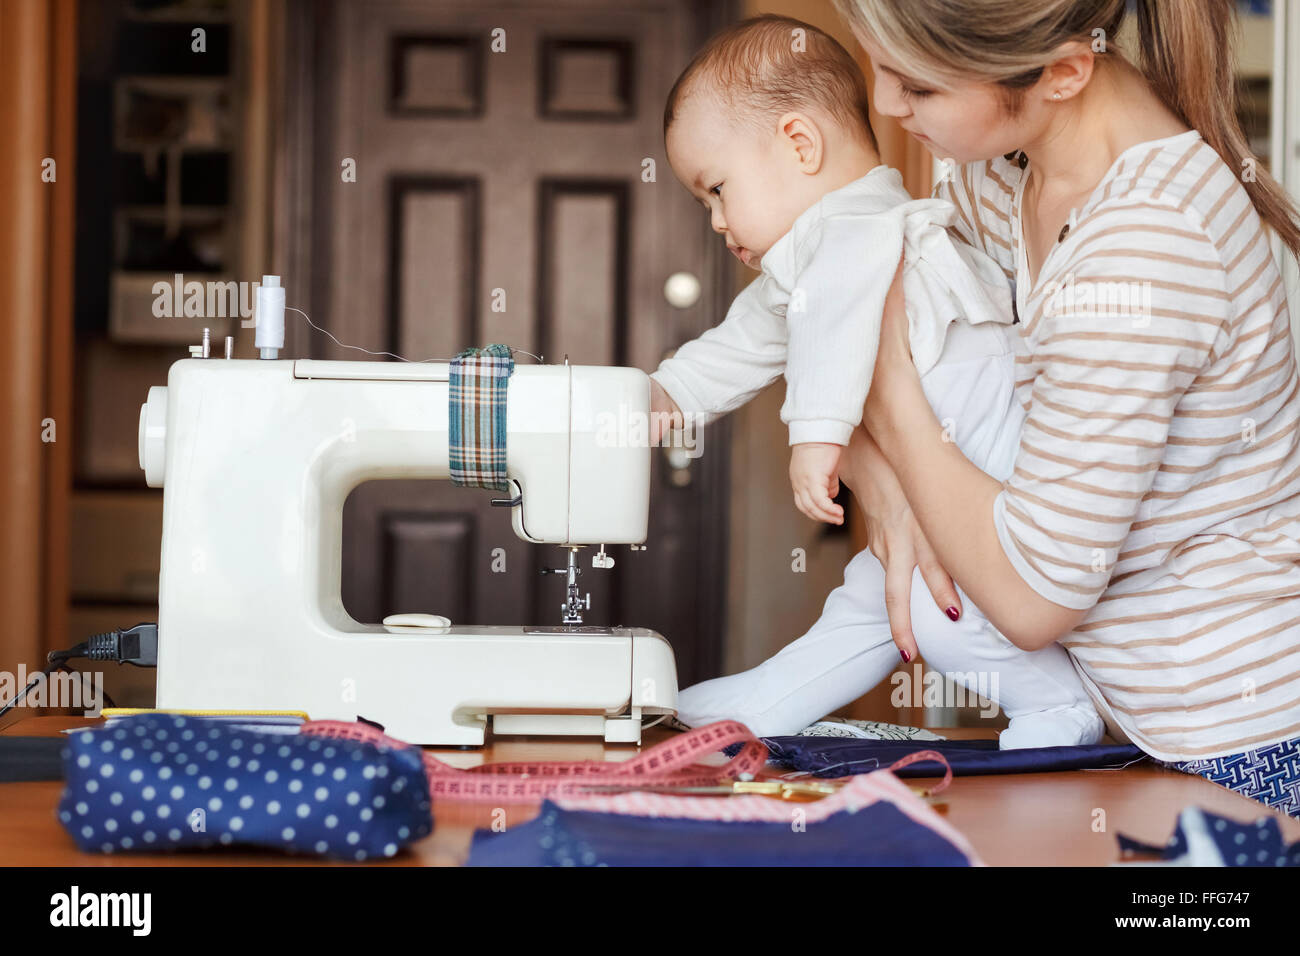 Kleines Kind lernt neuen Erkenntnisse, zusammen mit seiner Mutter inspiziert Nähmaschine. Arbeiten Sie zu Hause, Erziehung, Eltern und Kinder, Betreuung, Babysitter. Stockfoto